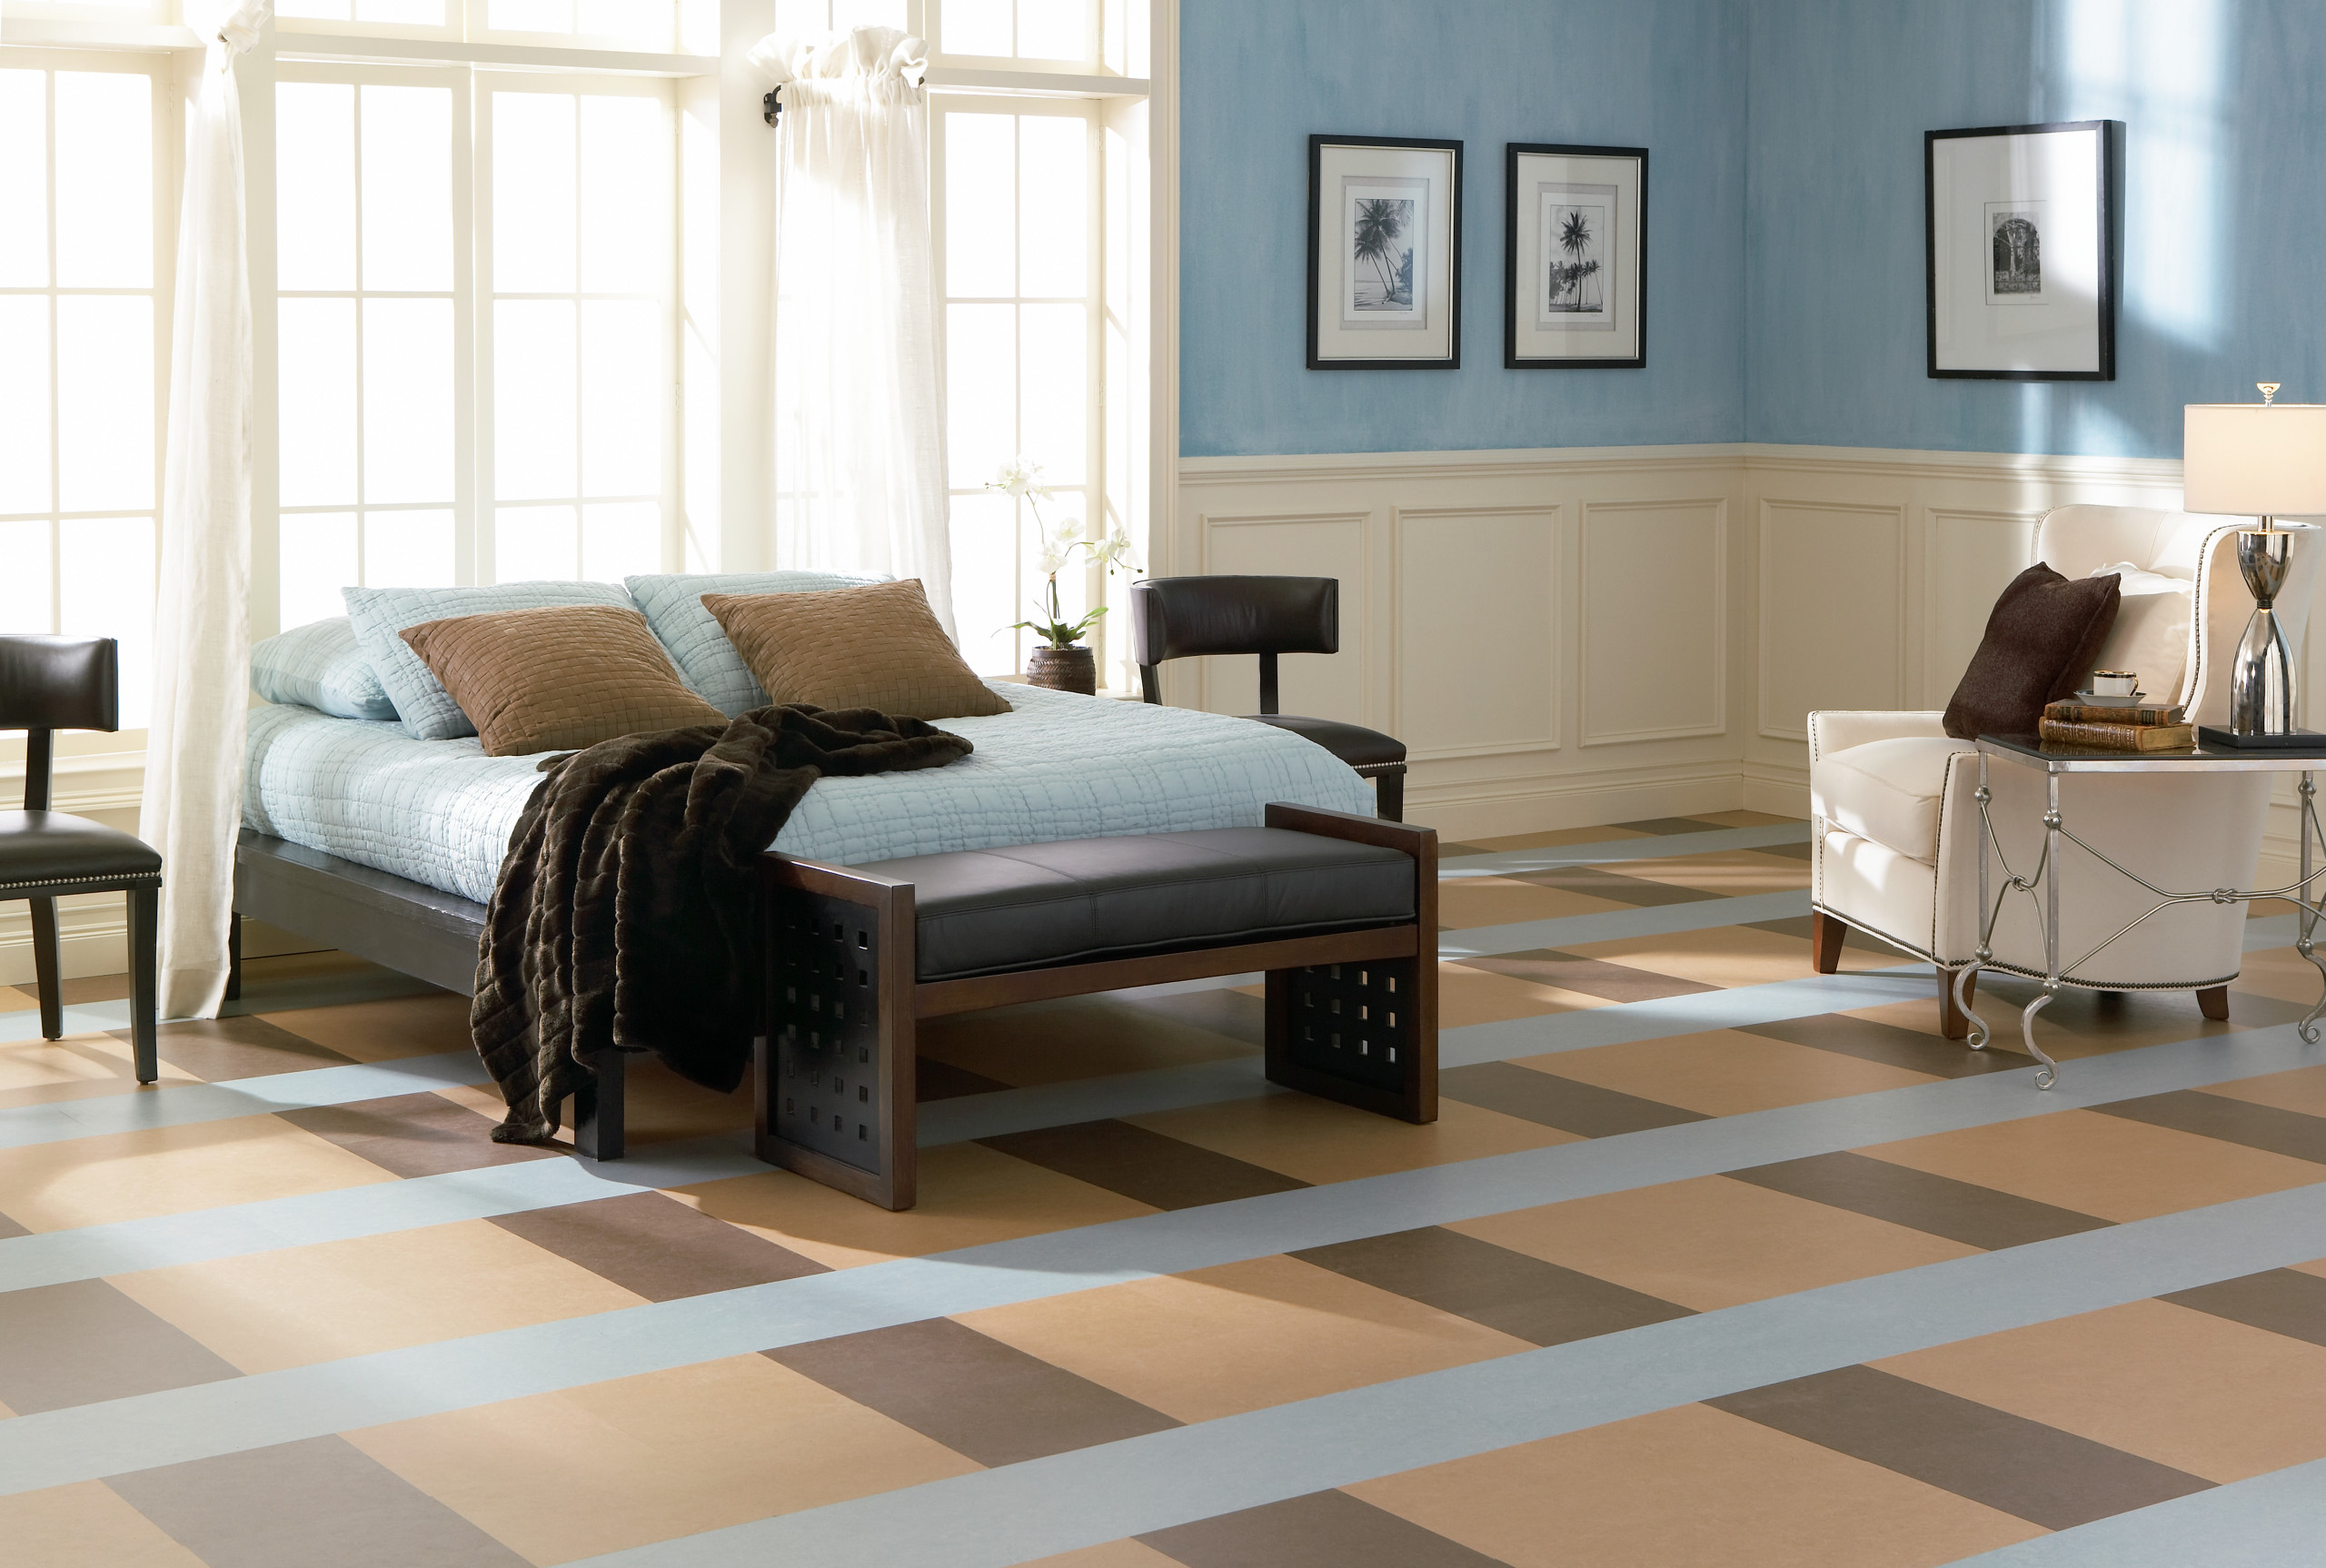 75 Linoleum Floor Master Bedroom Ideas You'll Love - August, 2023 | Houzz